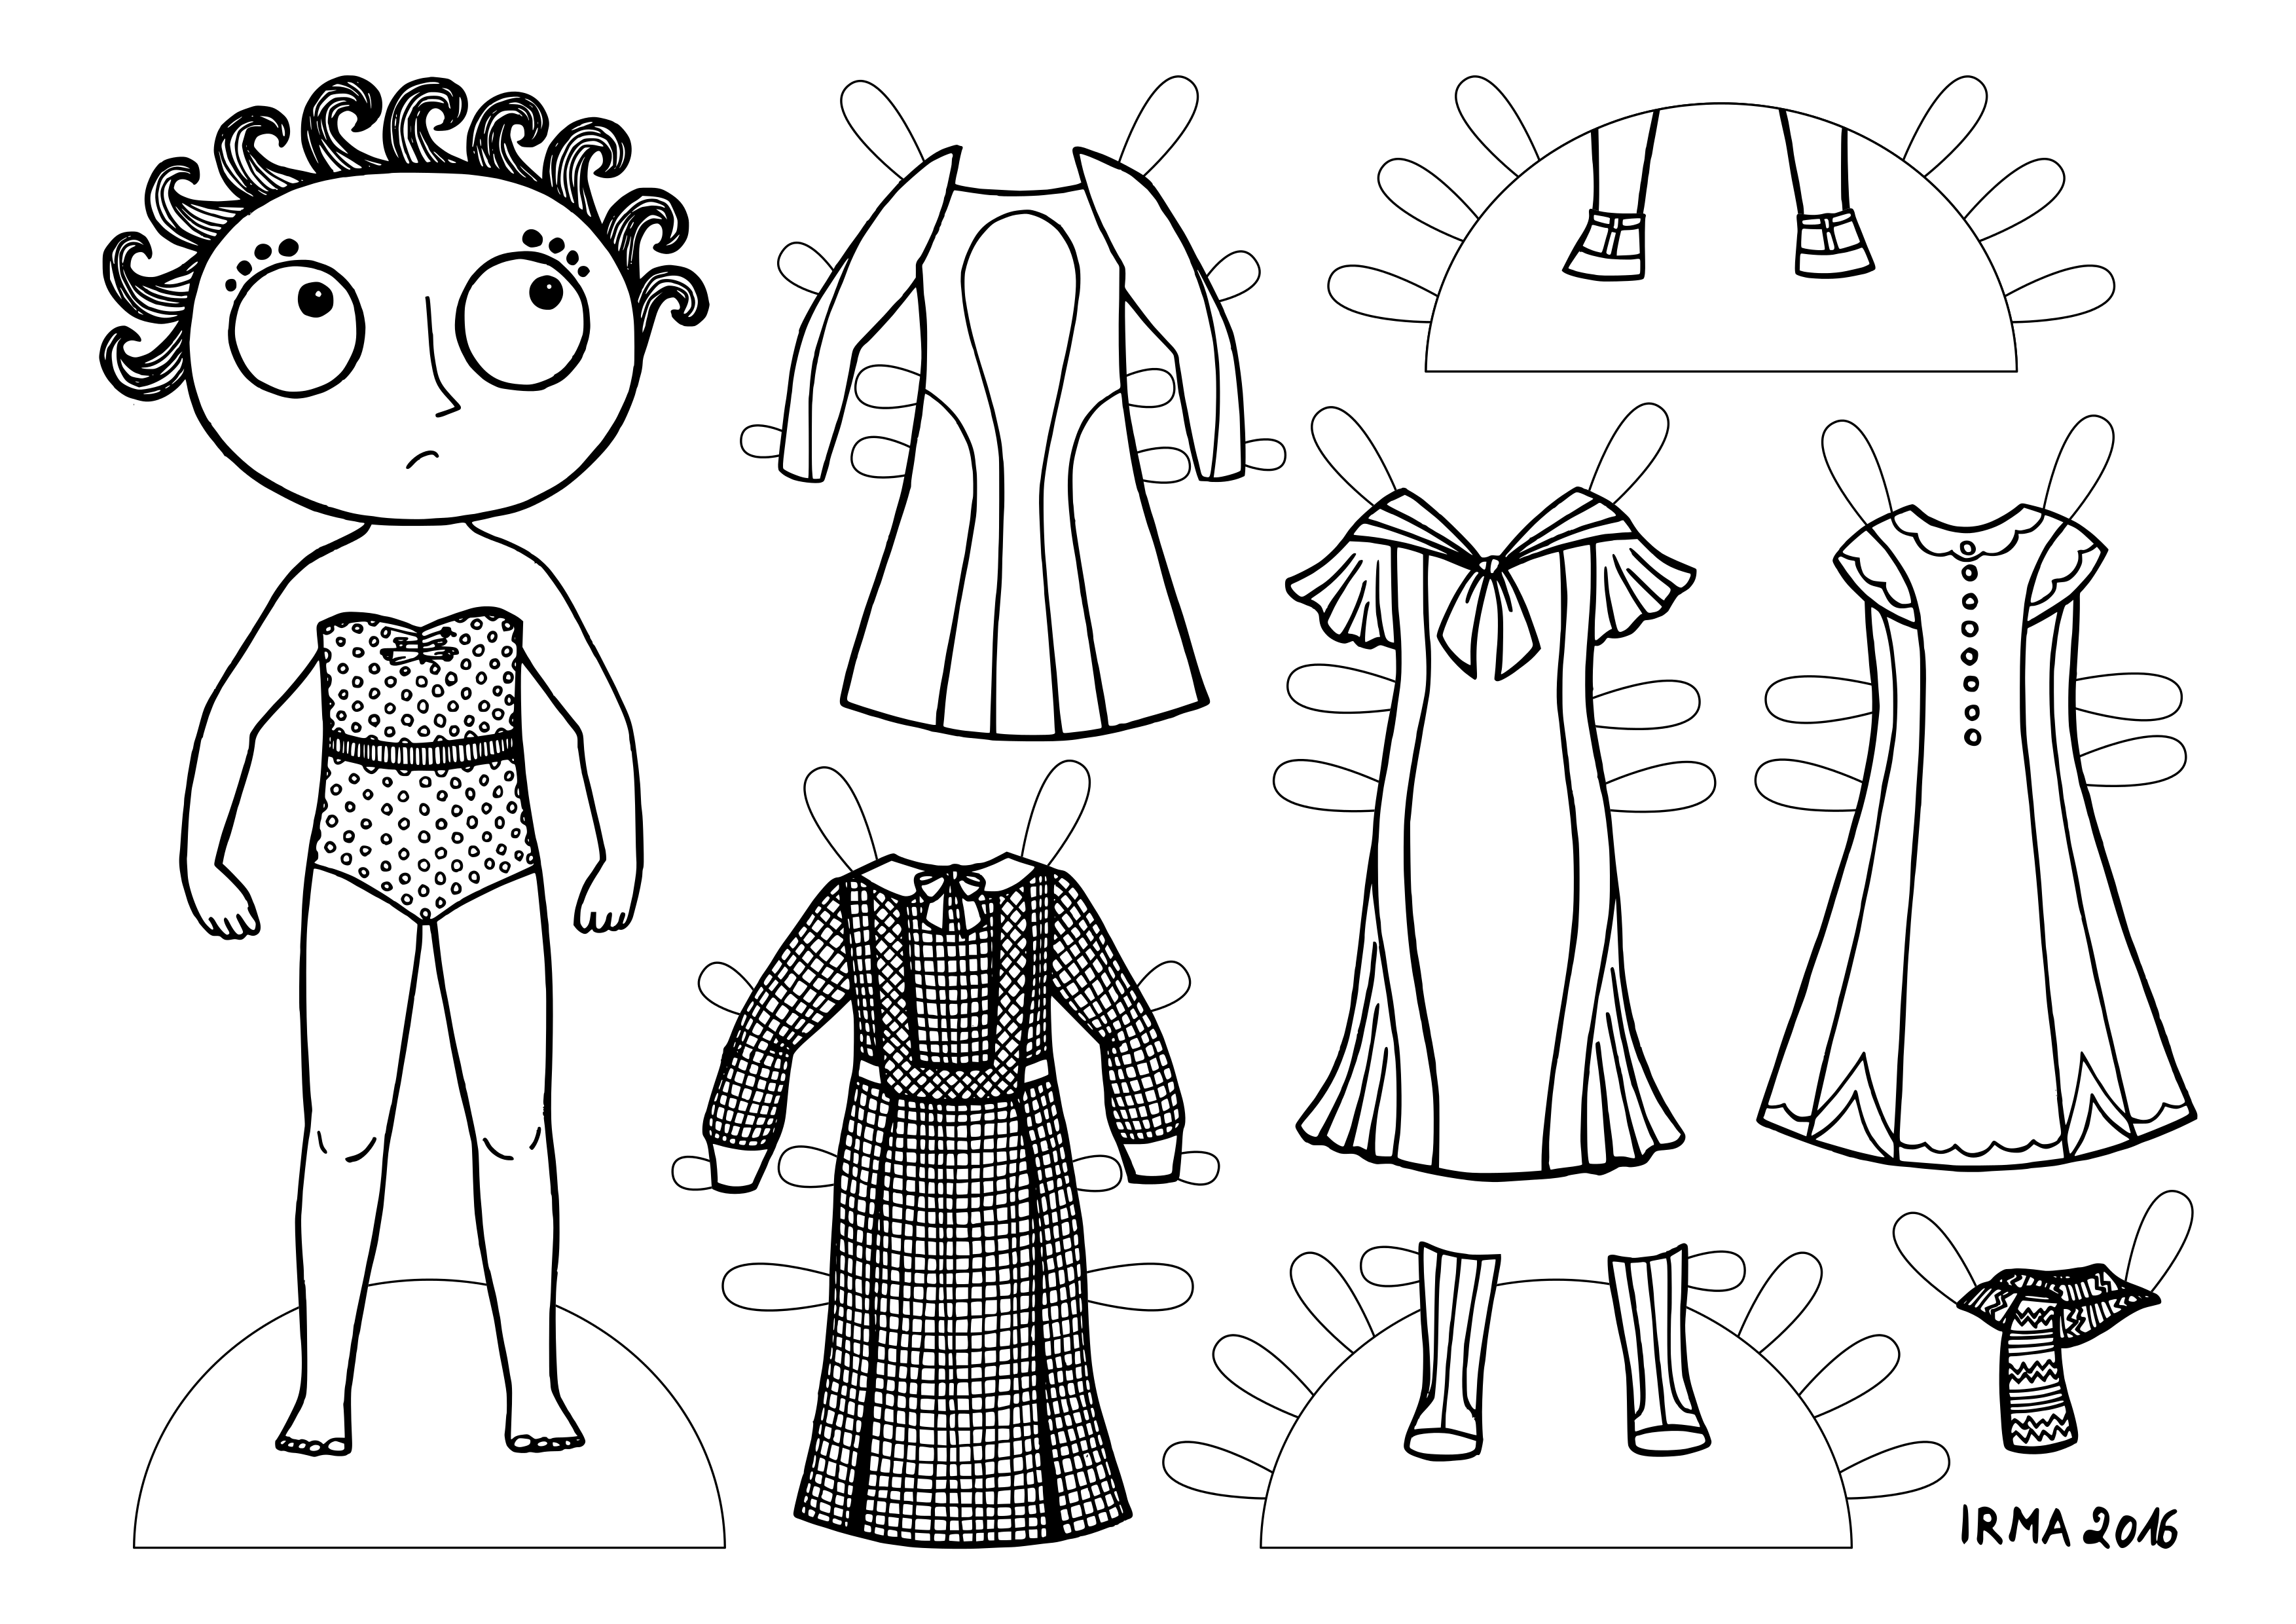 Pabernukk, mis kujutab suure pea, suurte silmadega ja merelaineid meenutavate lokkidega naist. Tal on seljas vööga trikoo ning tema kõrval on neli kleiti, saapad, kingad ja sall. All on väike kiri: IRMA 2016.